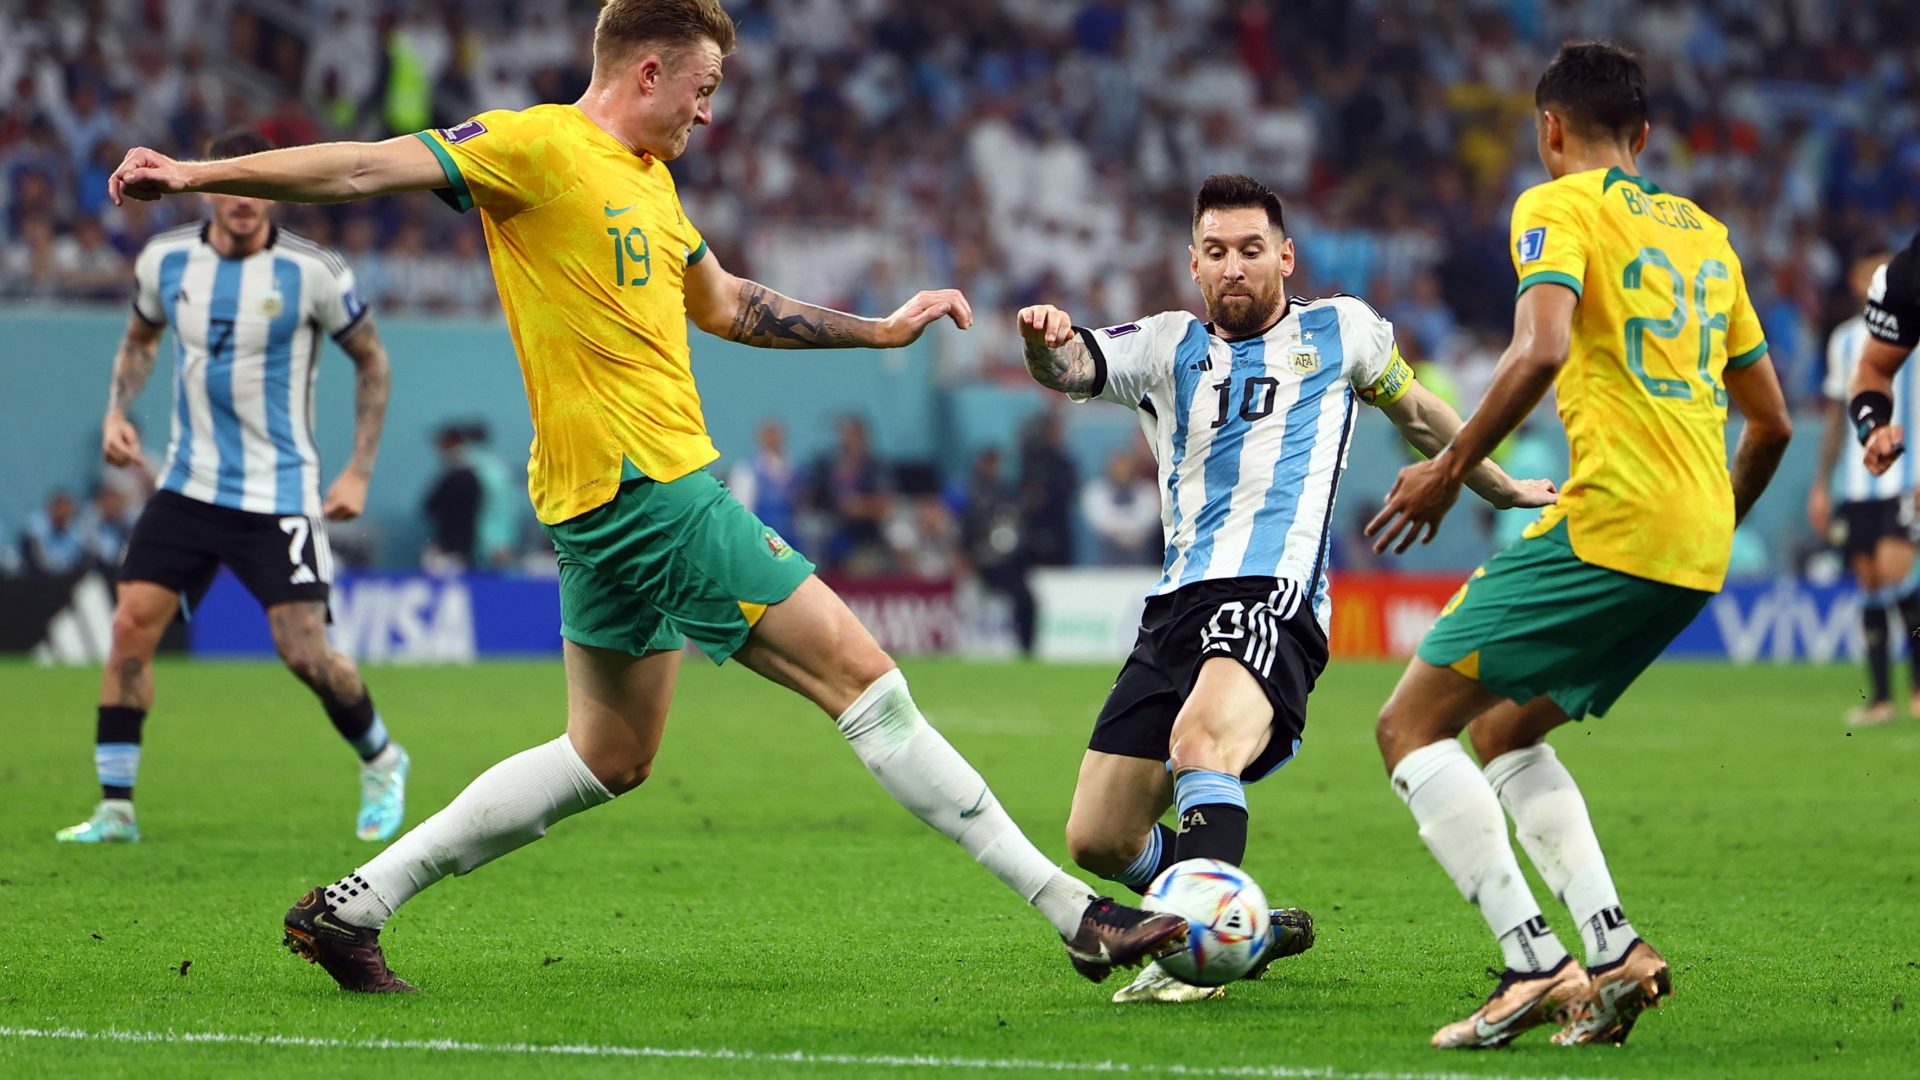 Jetzt im Livestream: Argentinien gegen Australien